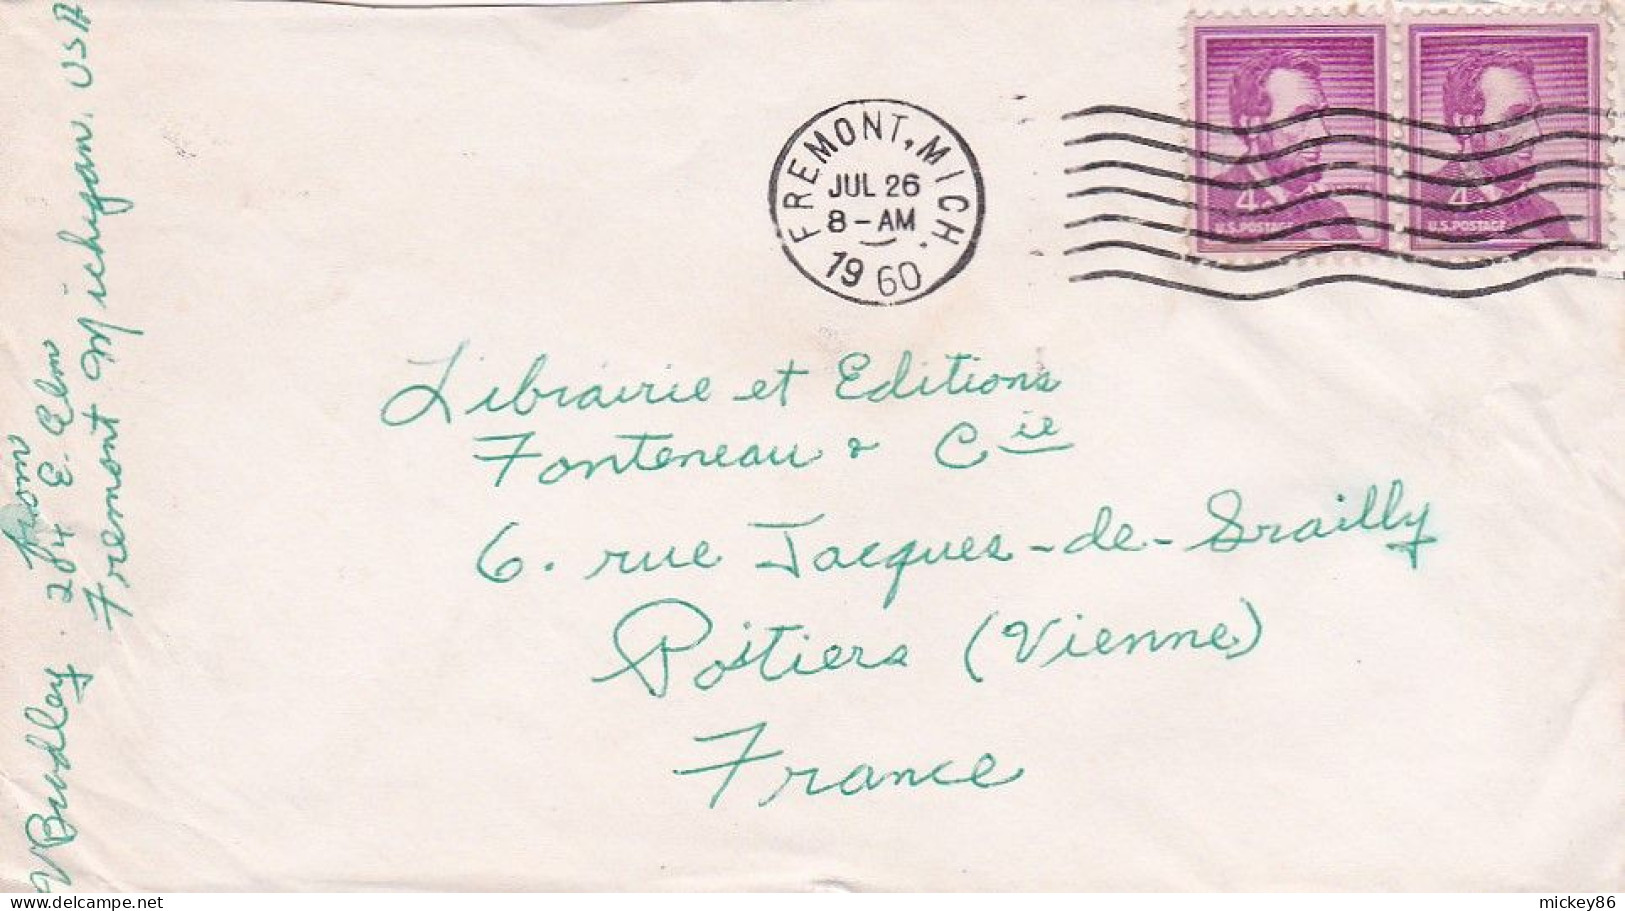 Etats-Unis--1960--Lettre De TREMONT. Mich  Pour POITIERS (France)..timbres + Cachet Mécanique Muet - Storia Postale